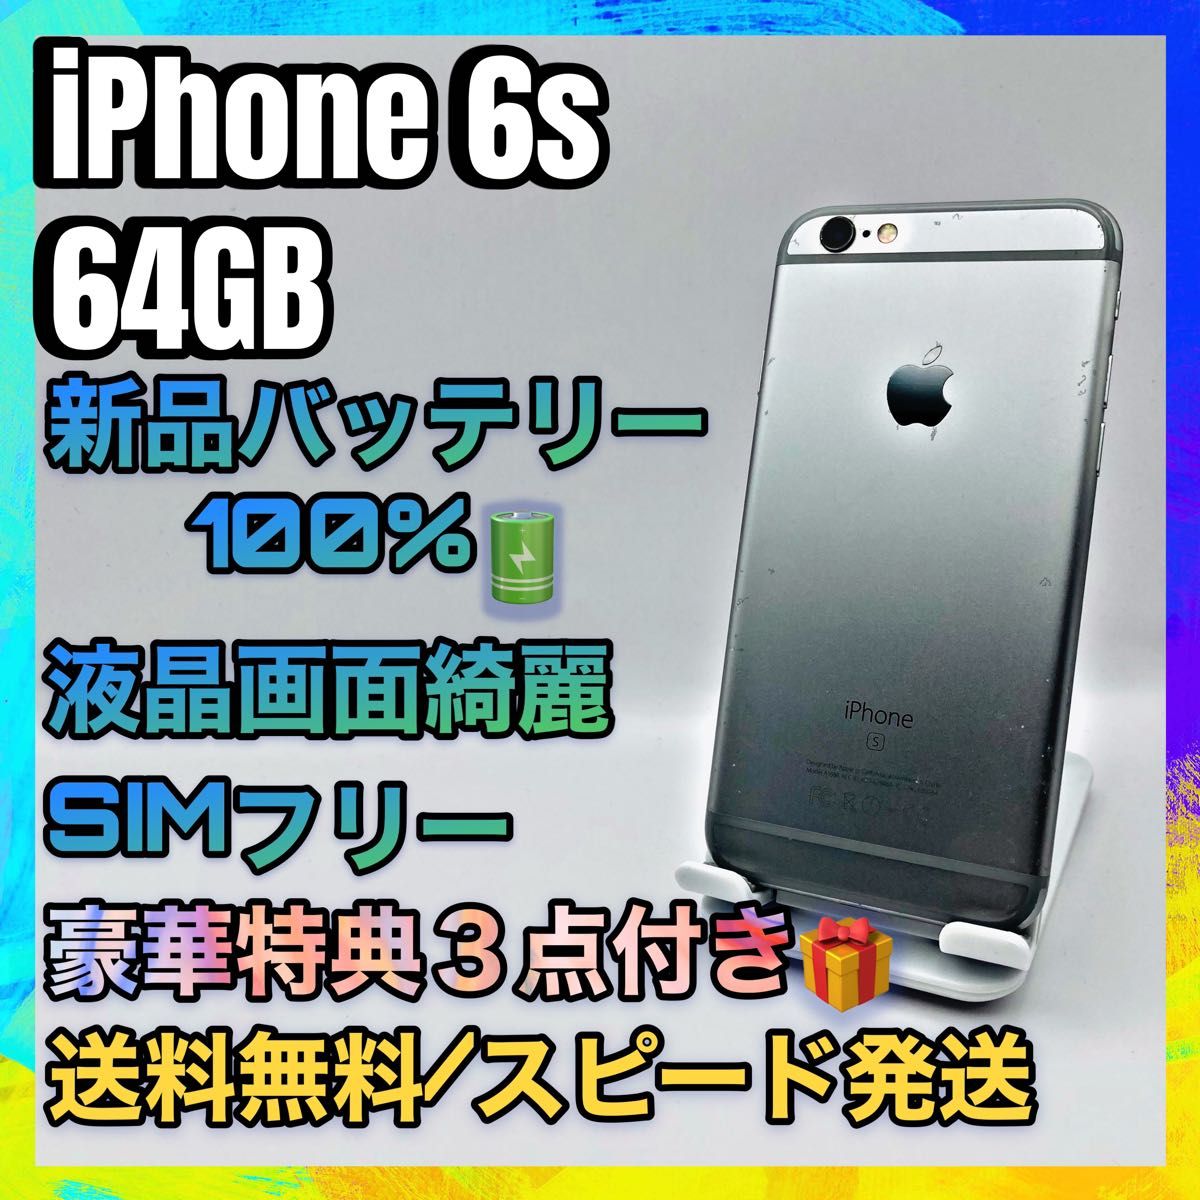 特典３点】iPhone 6s silver 64GB SIMフリー バッテリー最大容量100